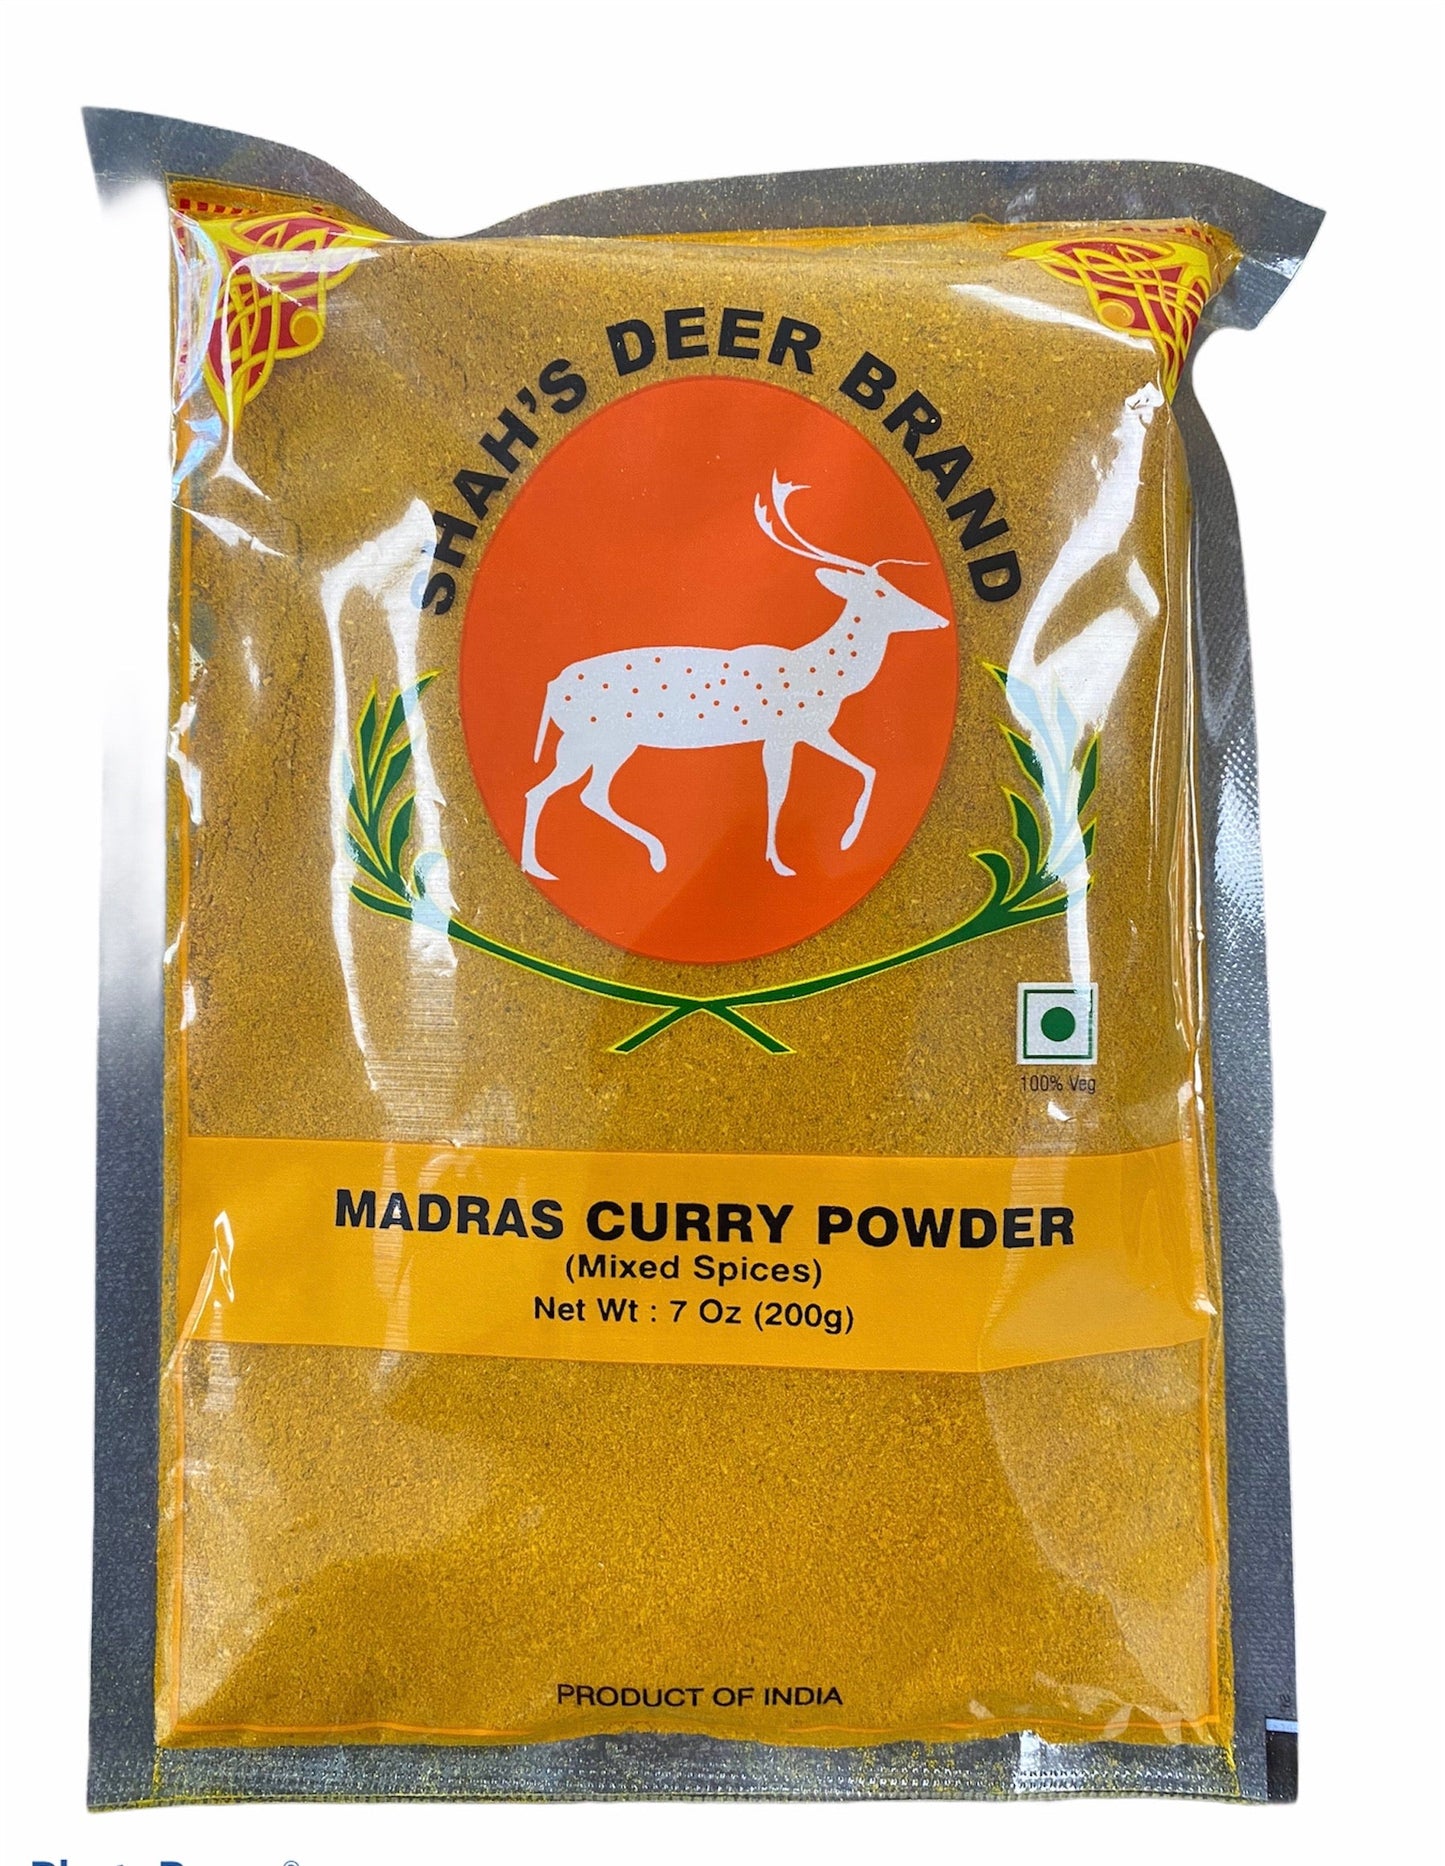 Deer Brand Madras Curry Powder